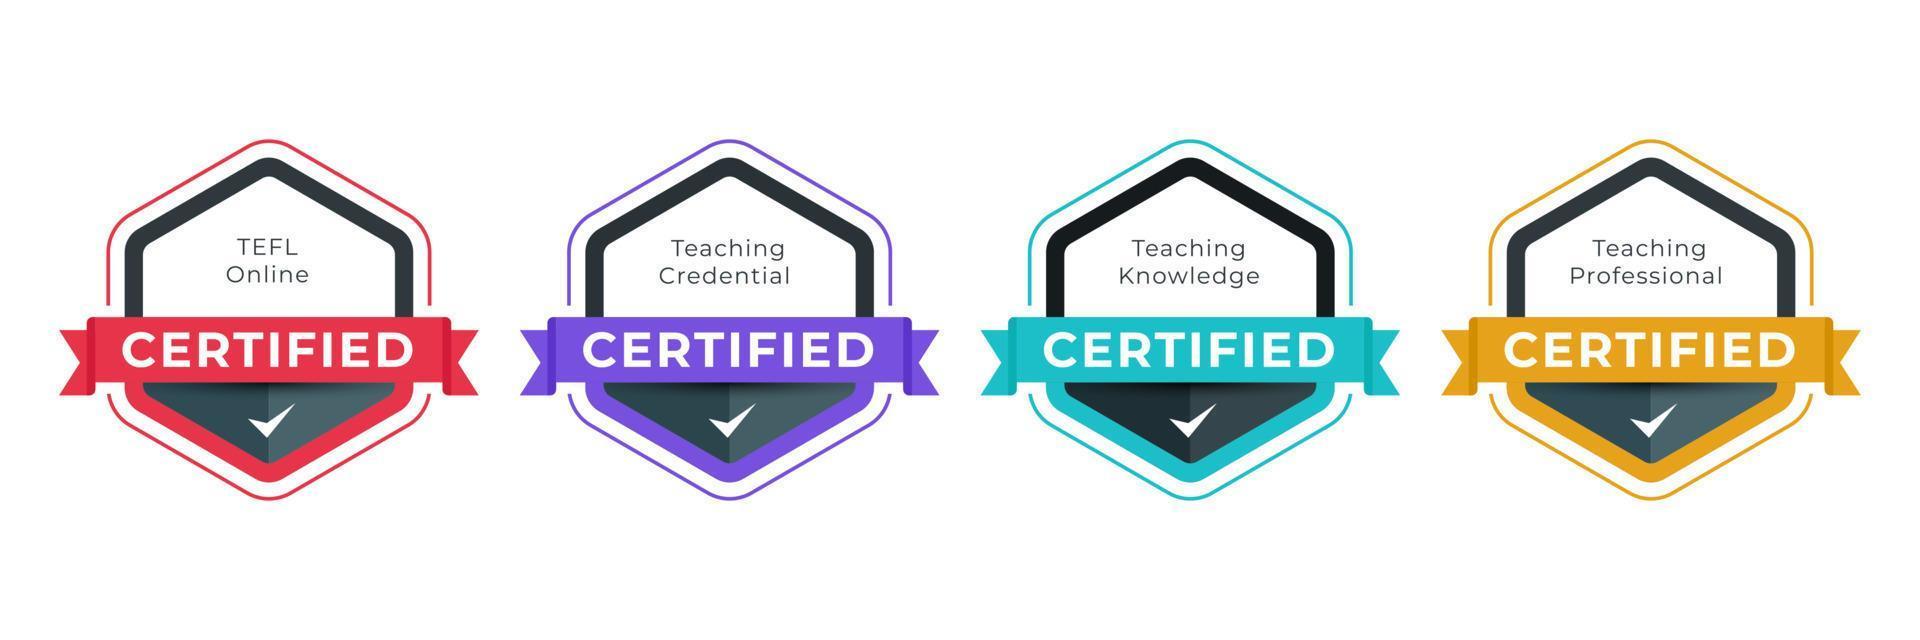 digitalt märke certifierat för professionell undervisningskategori. vektor logotyp certifikat ikon designmall.